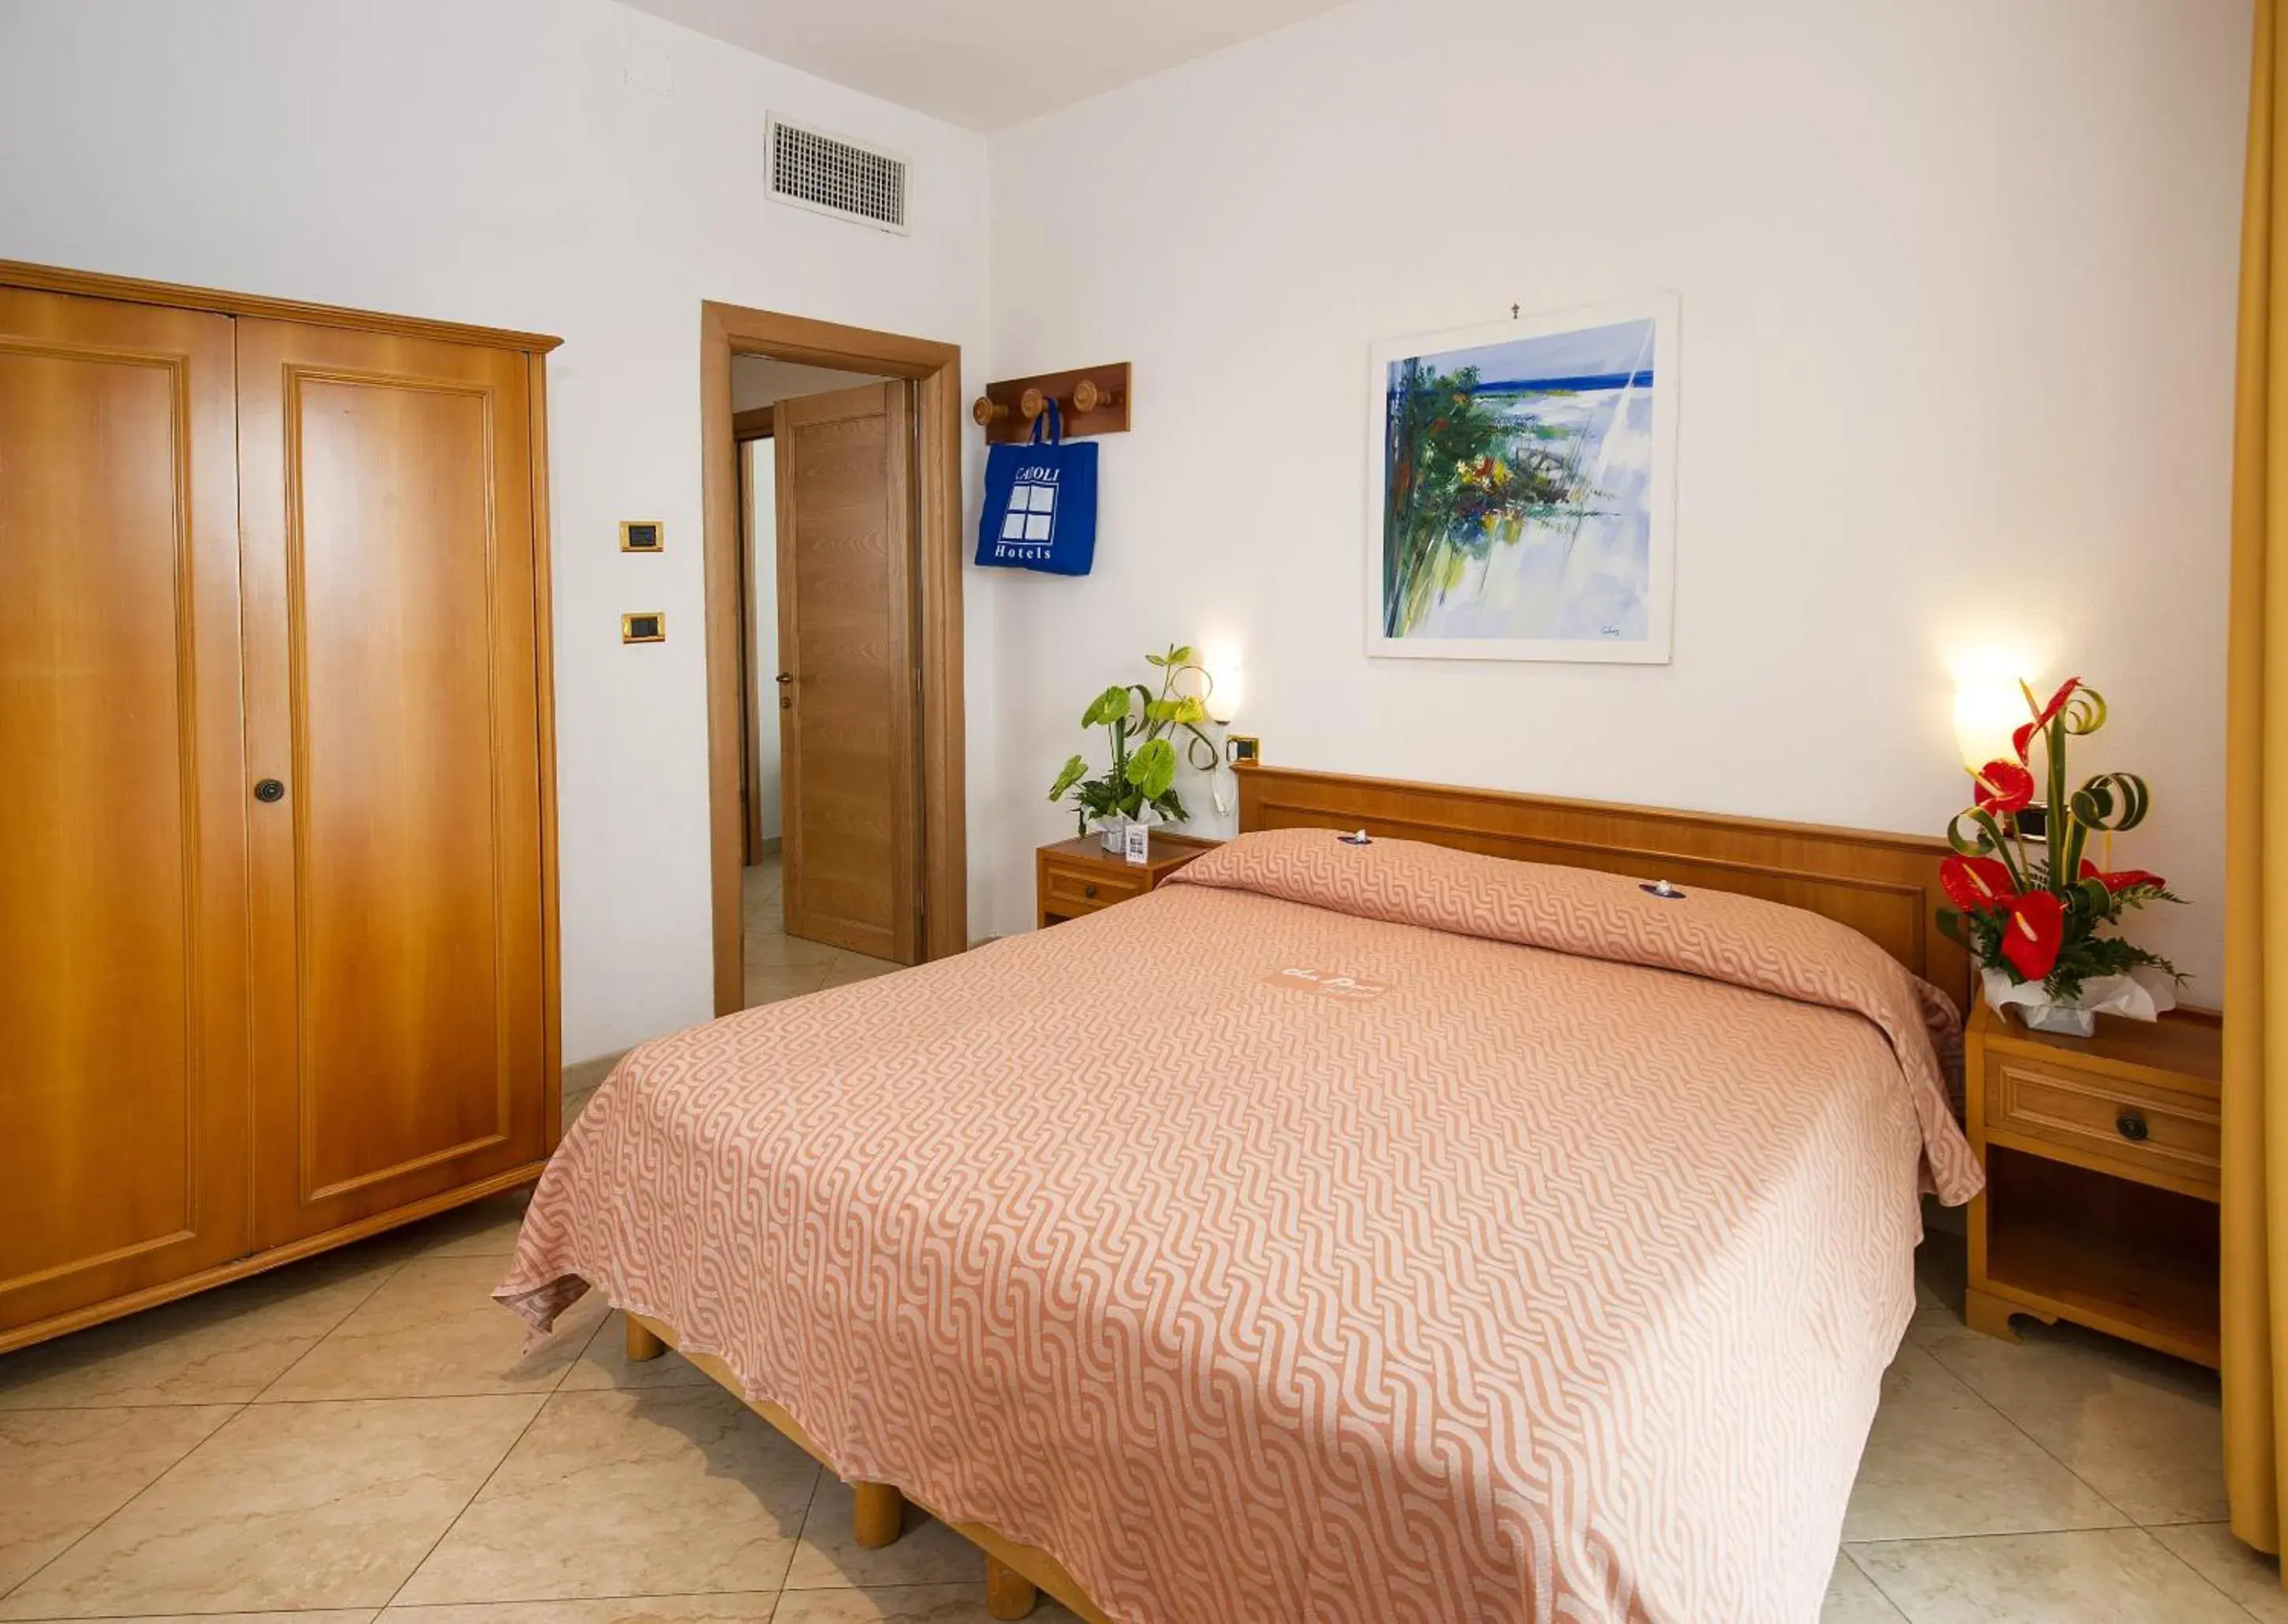 Bed, Room Photo in Joli Park Hotel - Caroli Hotels